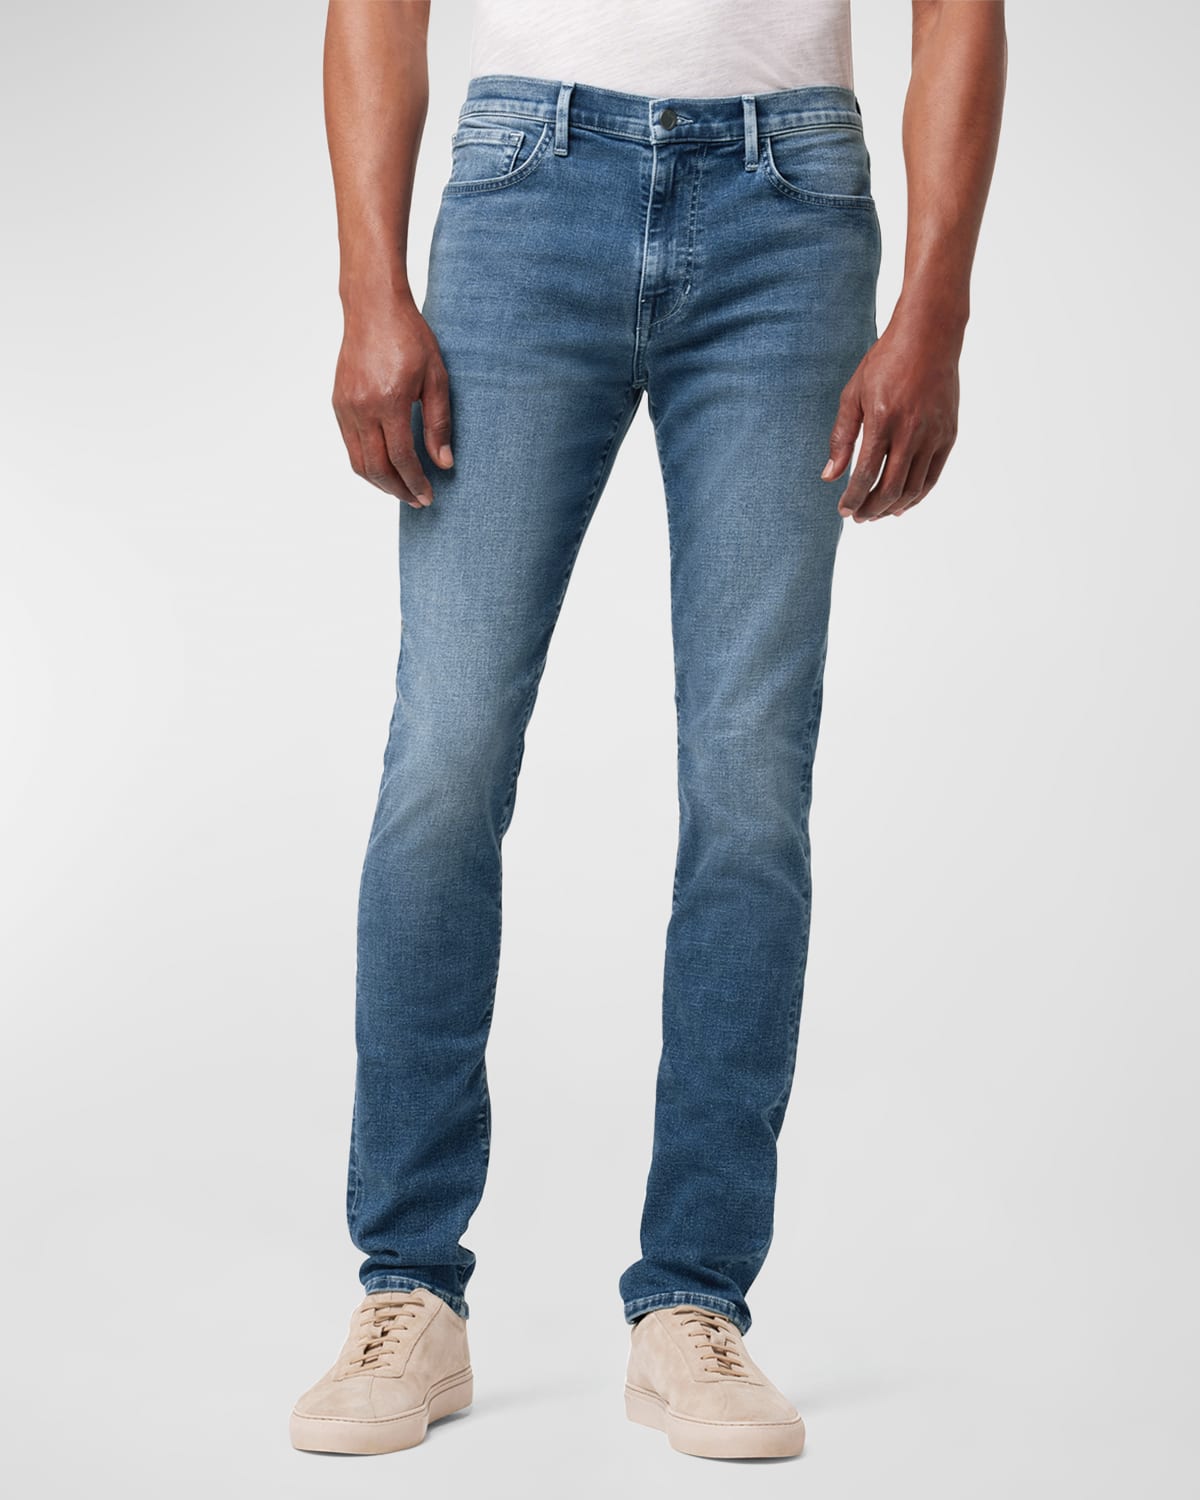 Men's Asher Slim Jeans in Isol